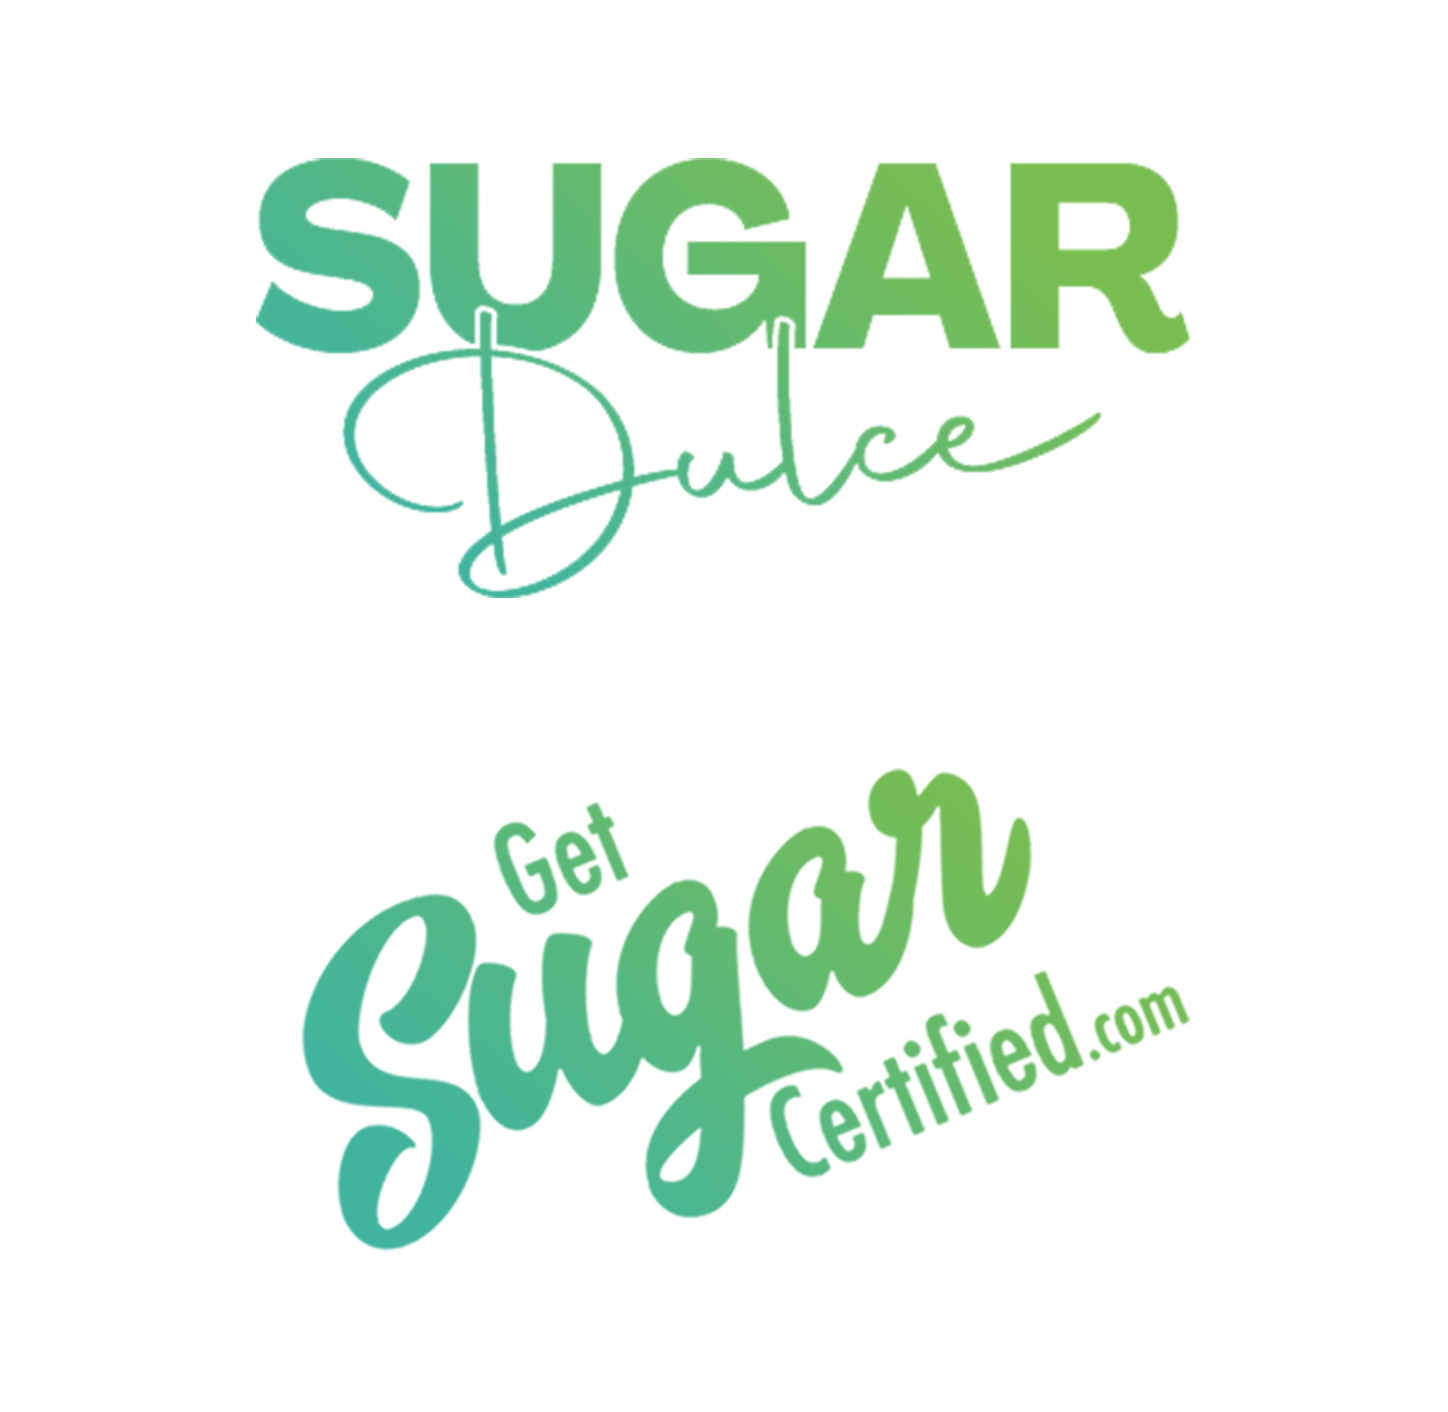 Get Sugar Certified Logo